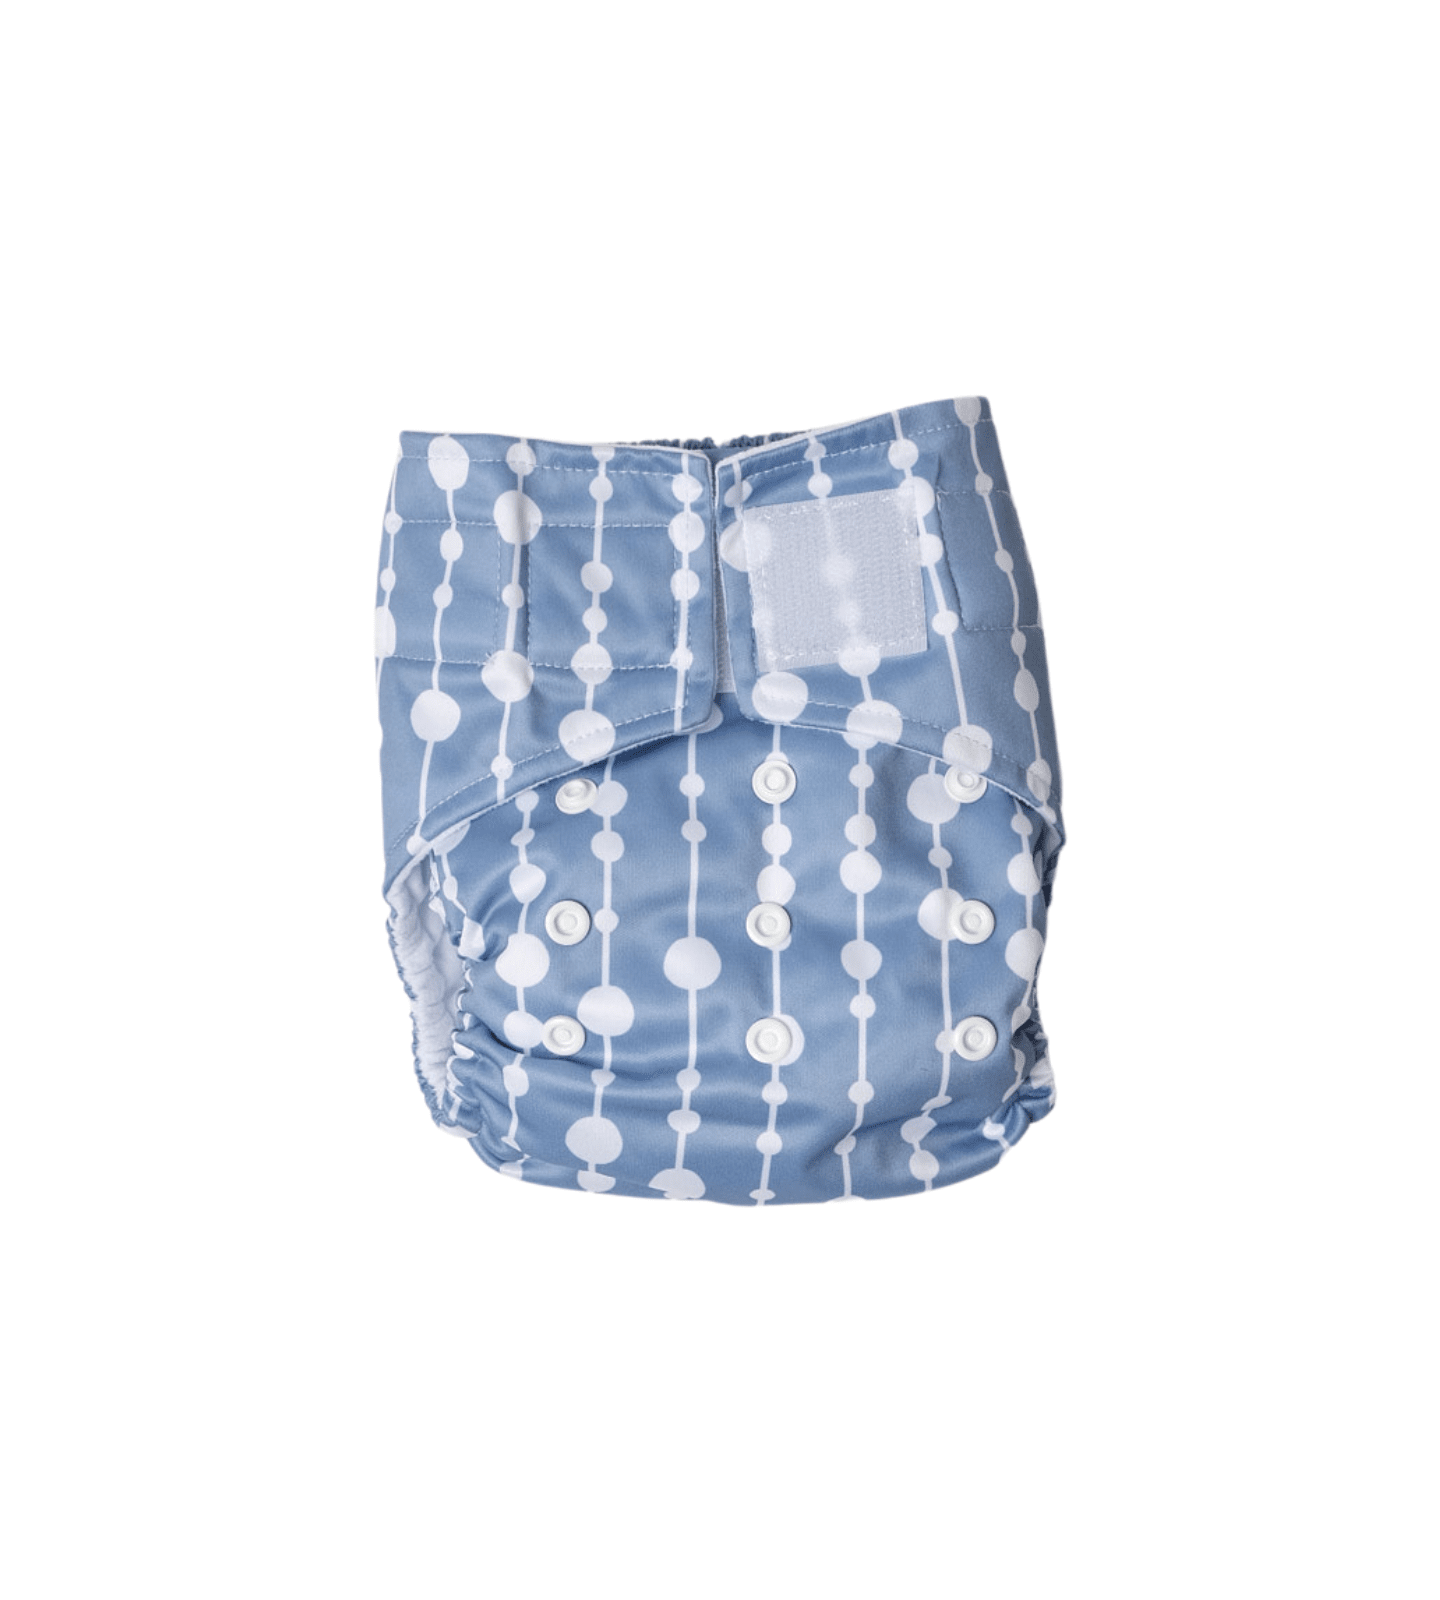 Snazzi Pants Hybrid Nappy – Brolly Sheets AU